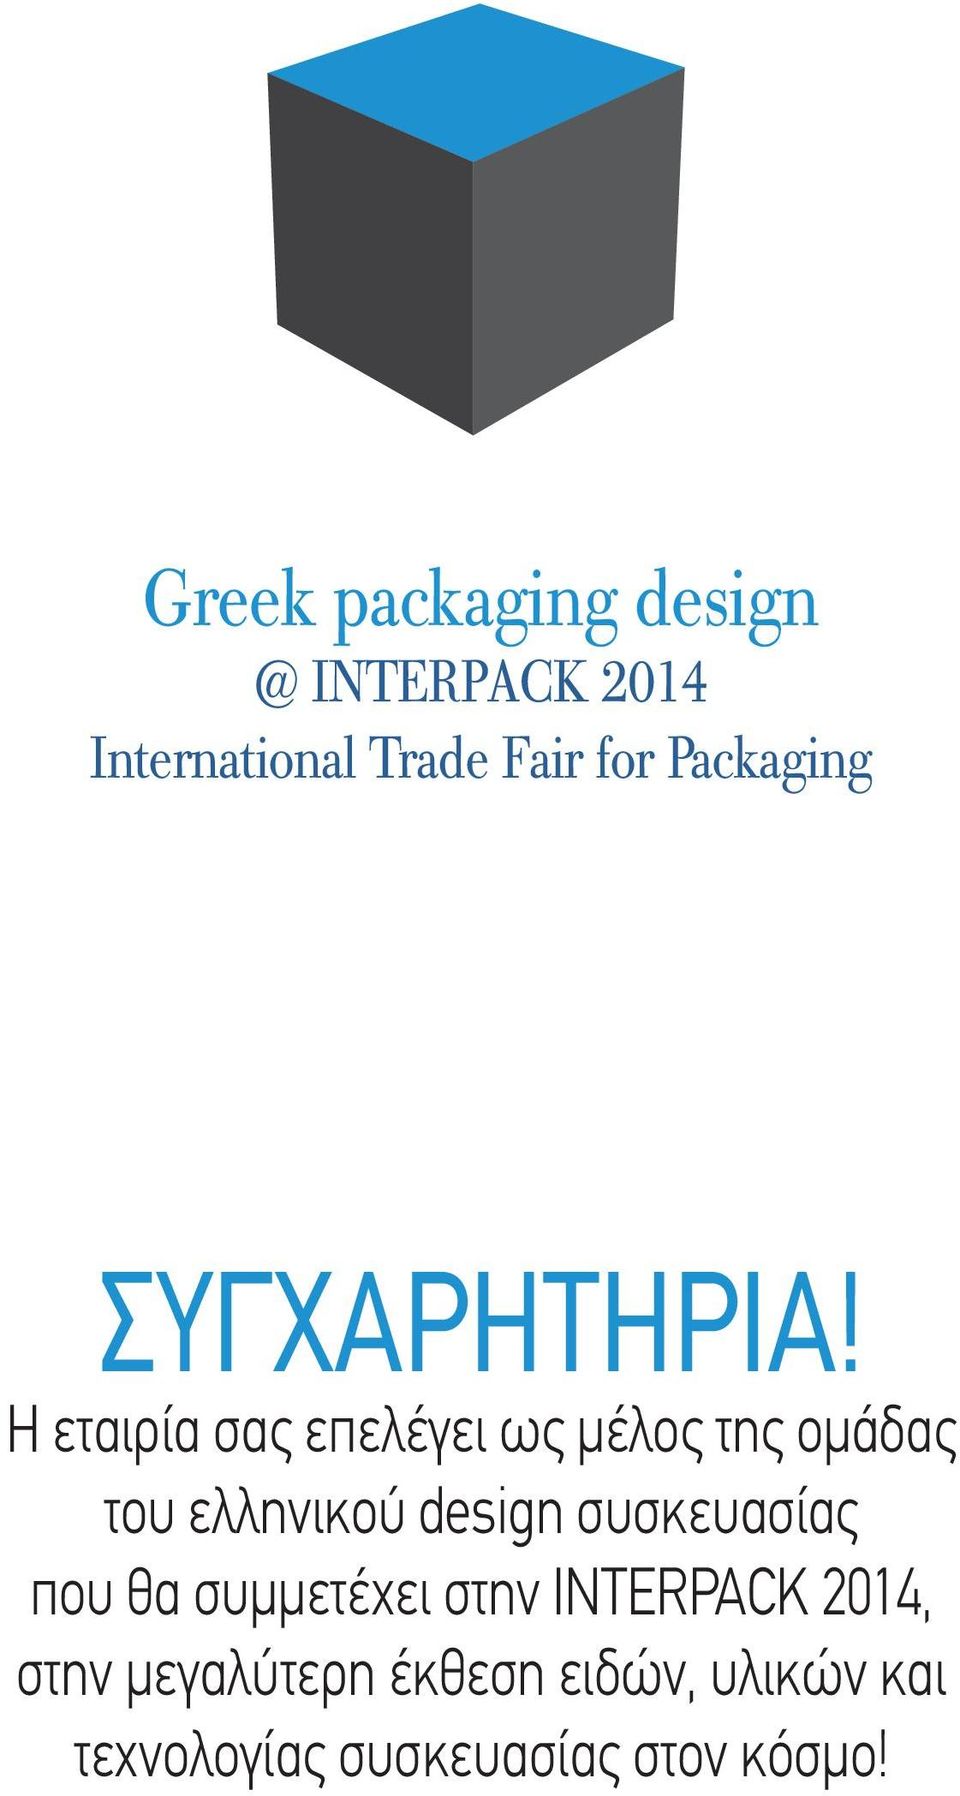 Η εταιρία σας επελέγει ως µέλος της οµάδας του ελληνικού design